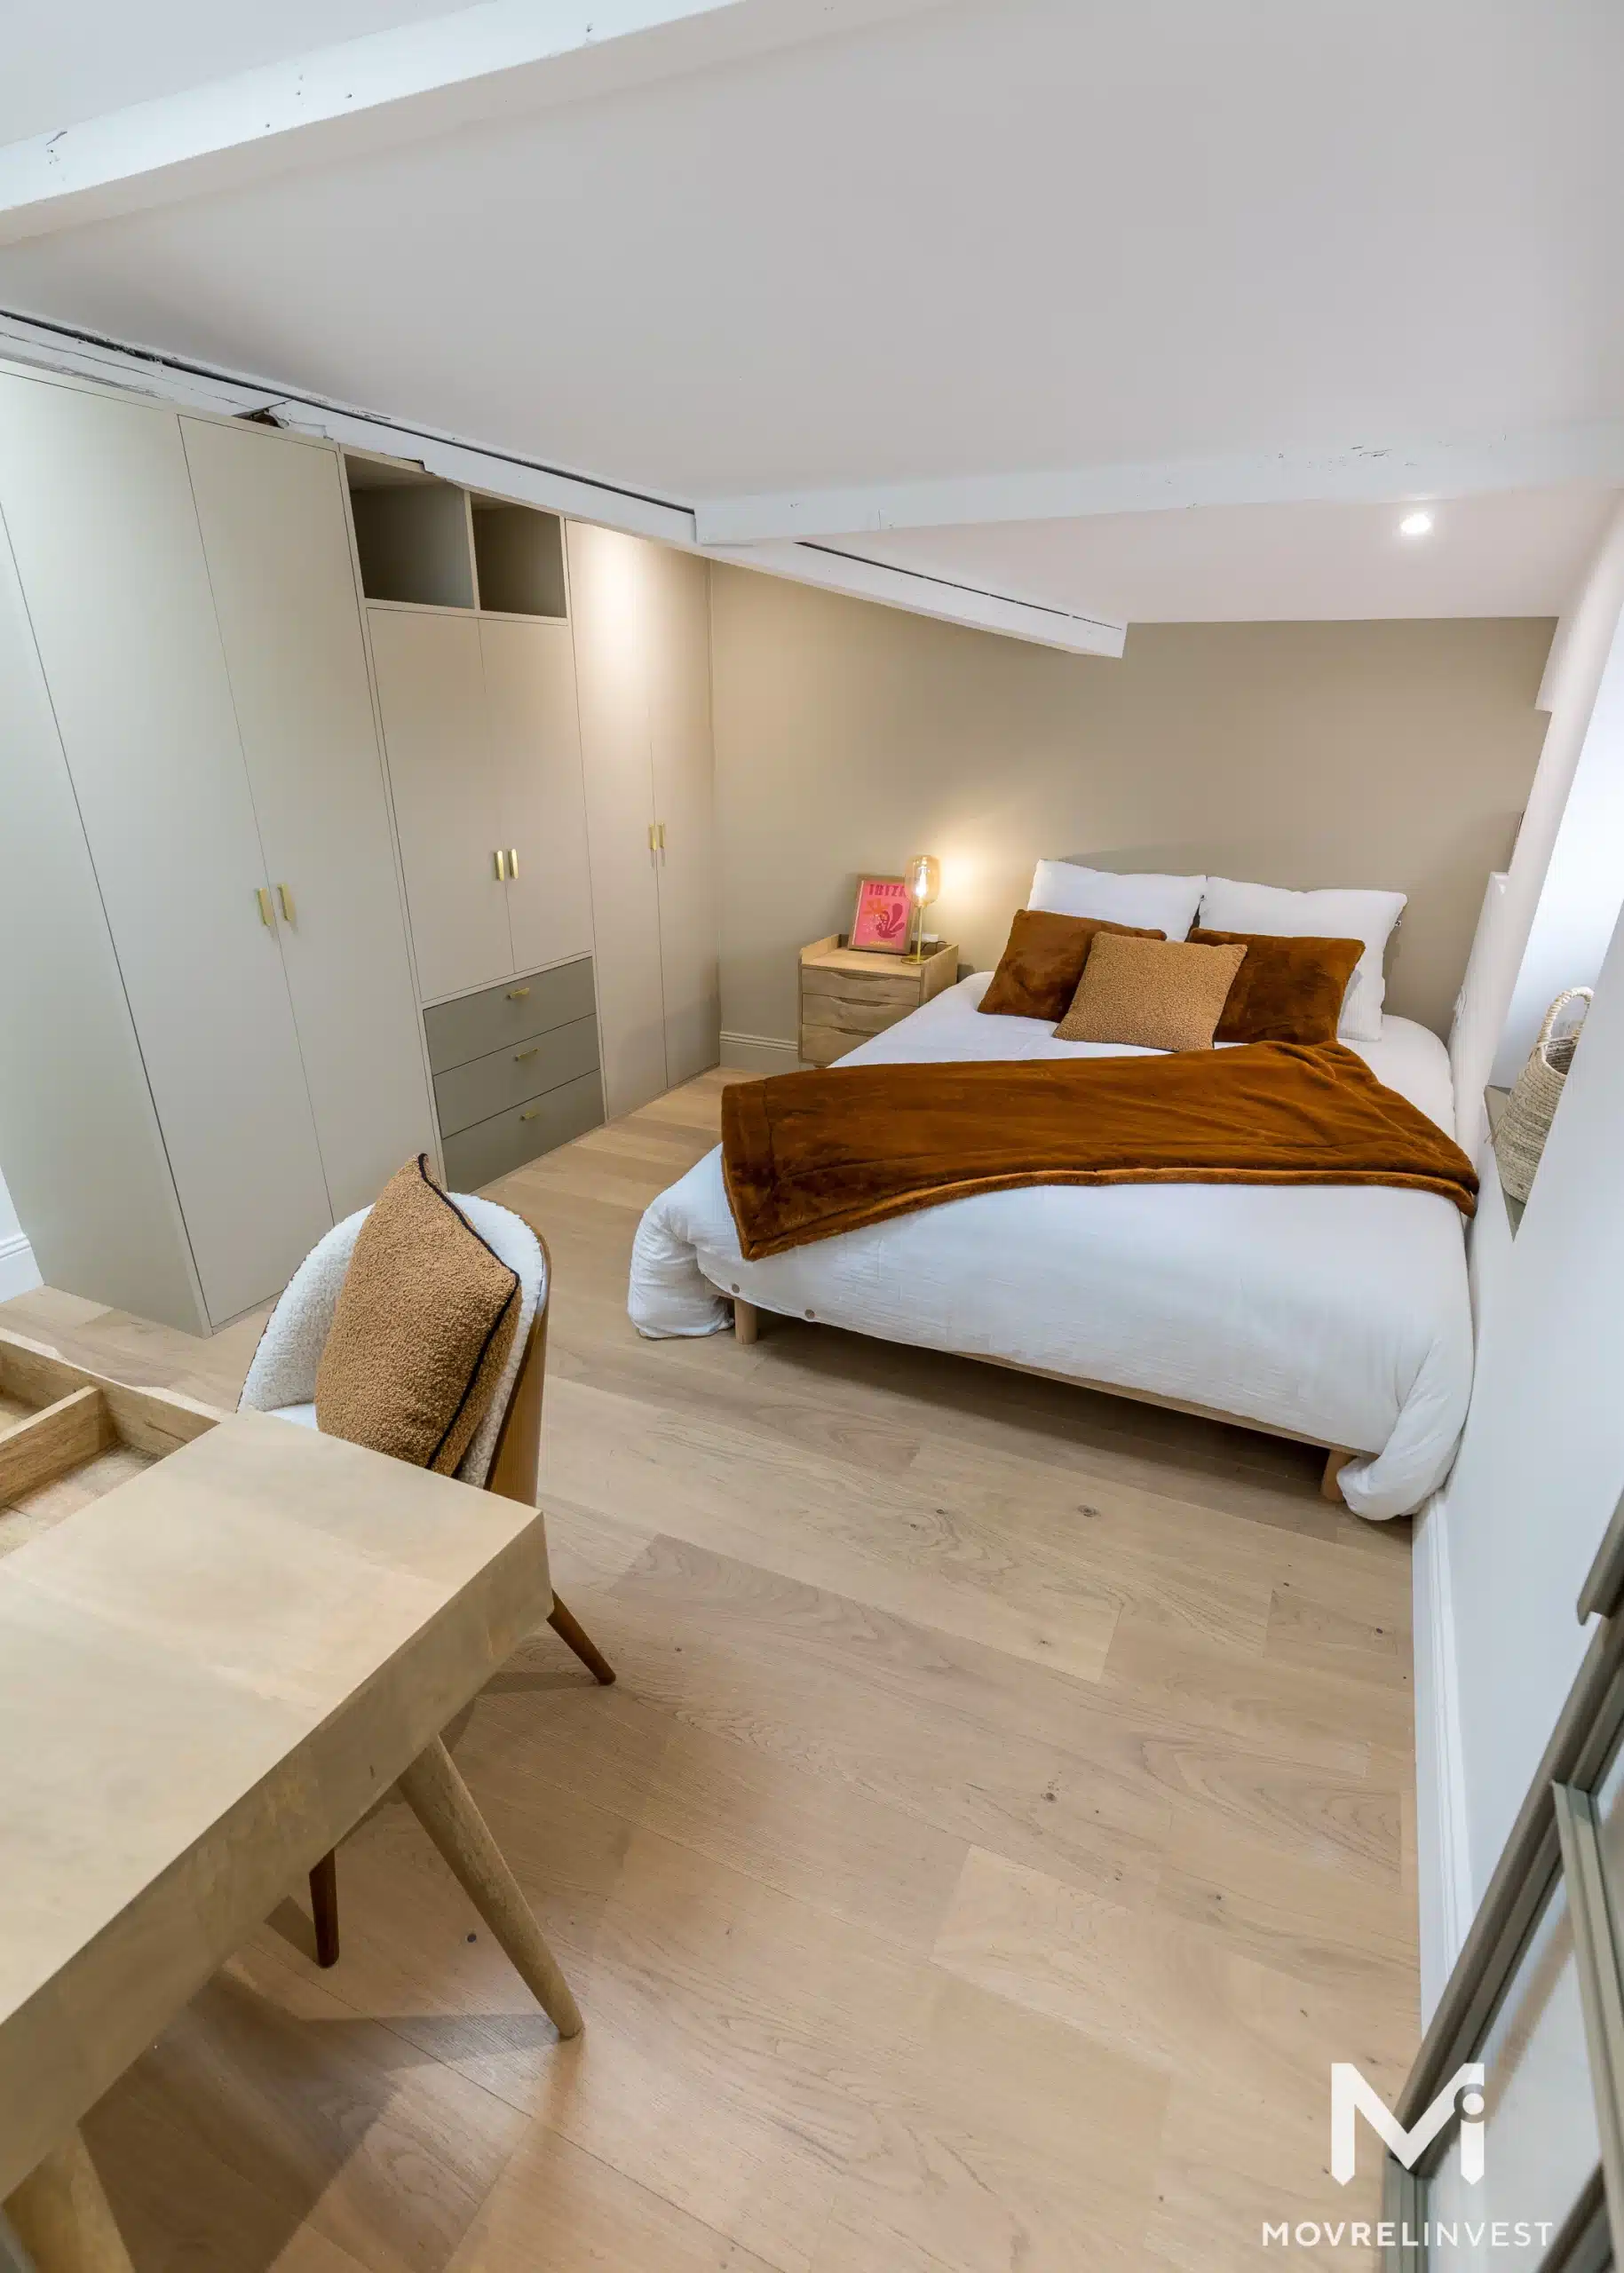 Chambre moderne et épurée avec lit double et rangements.